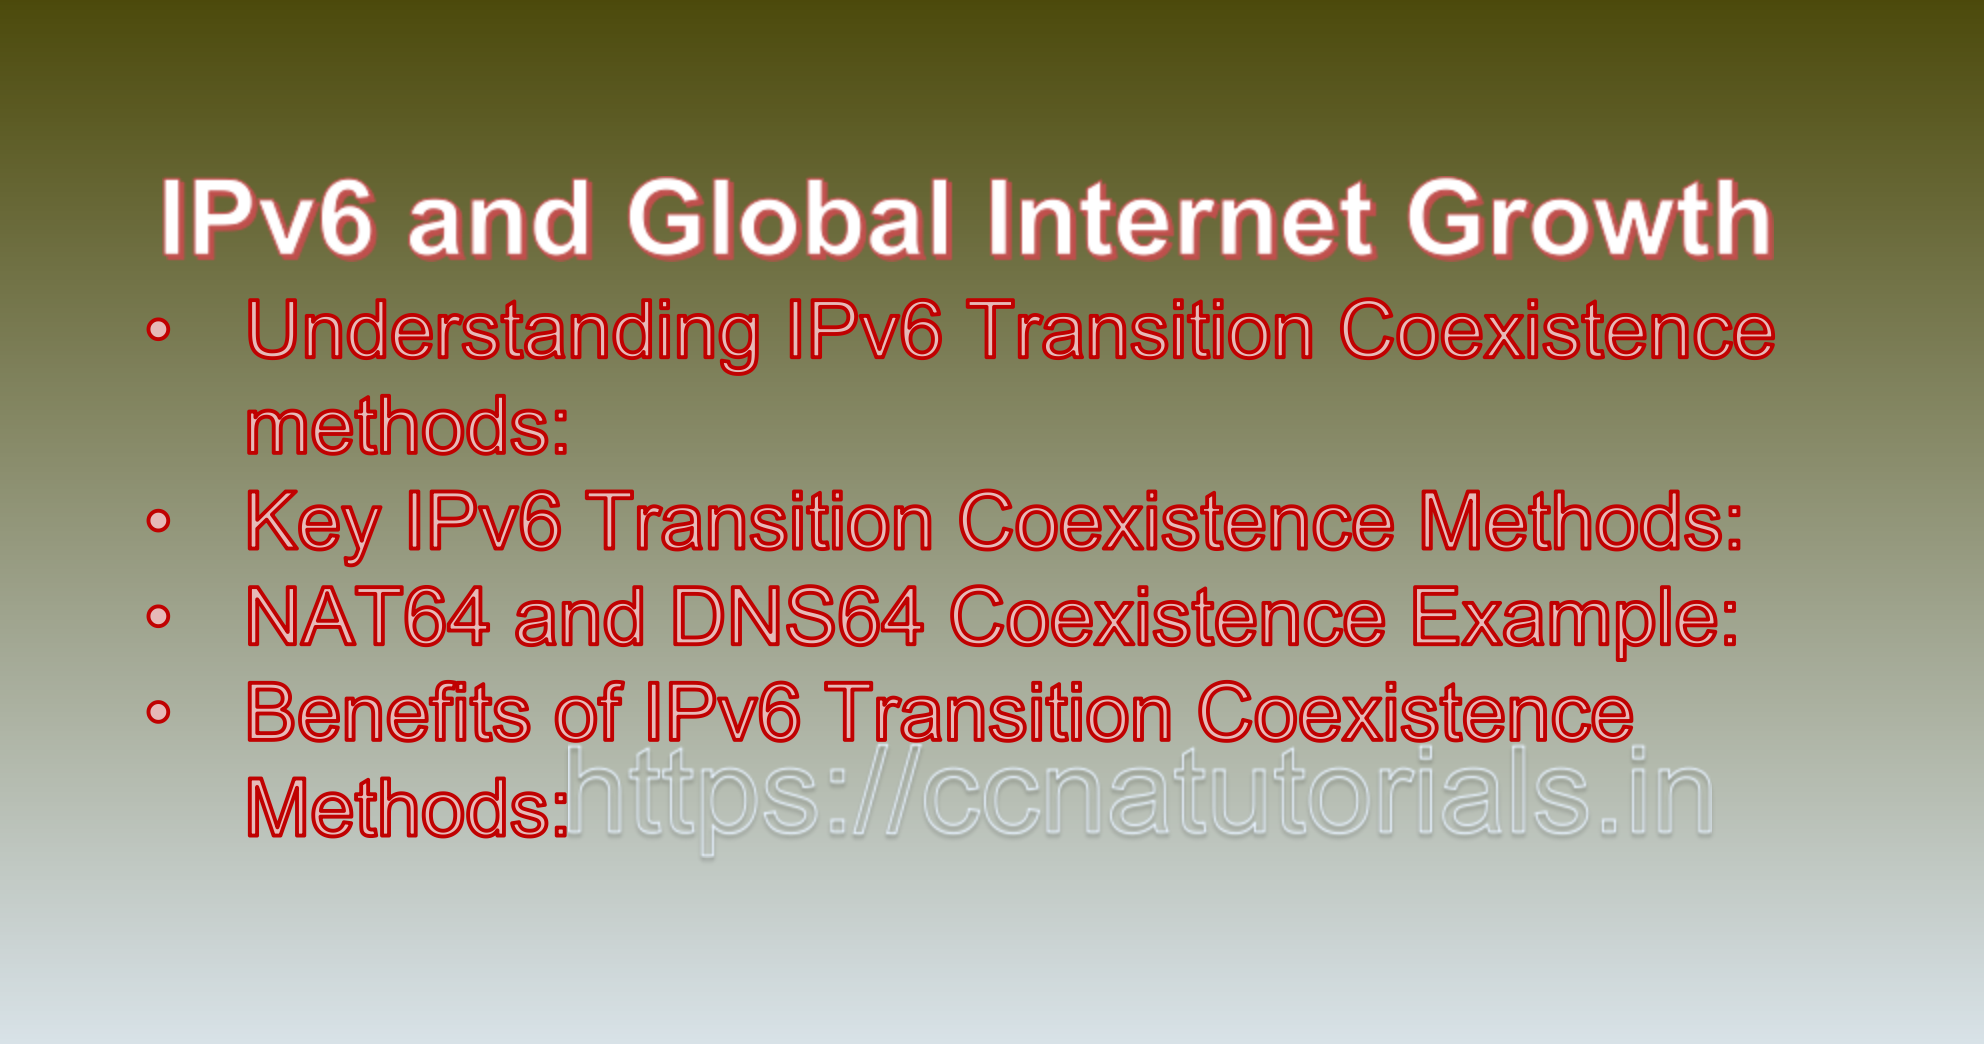 IPv6 Transition Coexistence Methods, ccna, ccna tutorials